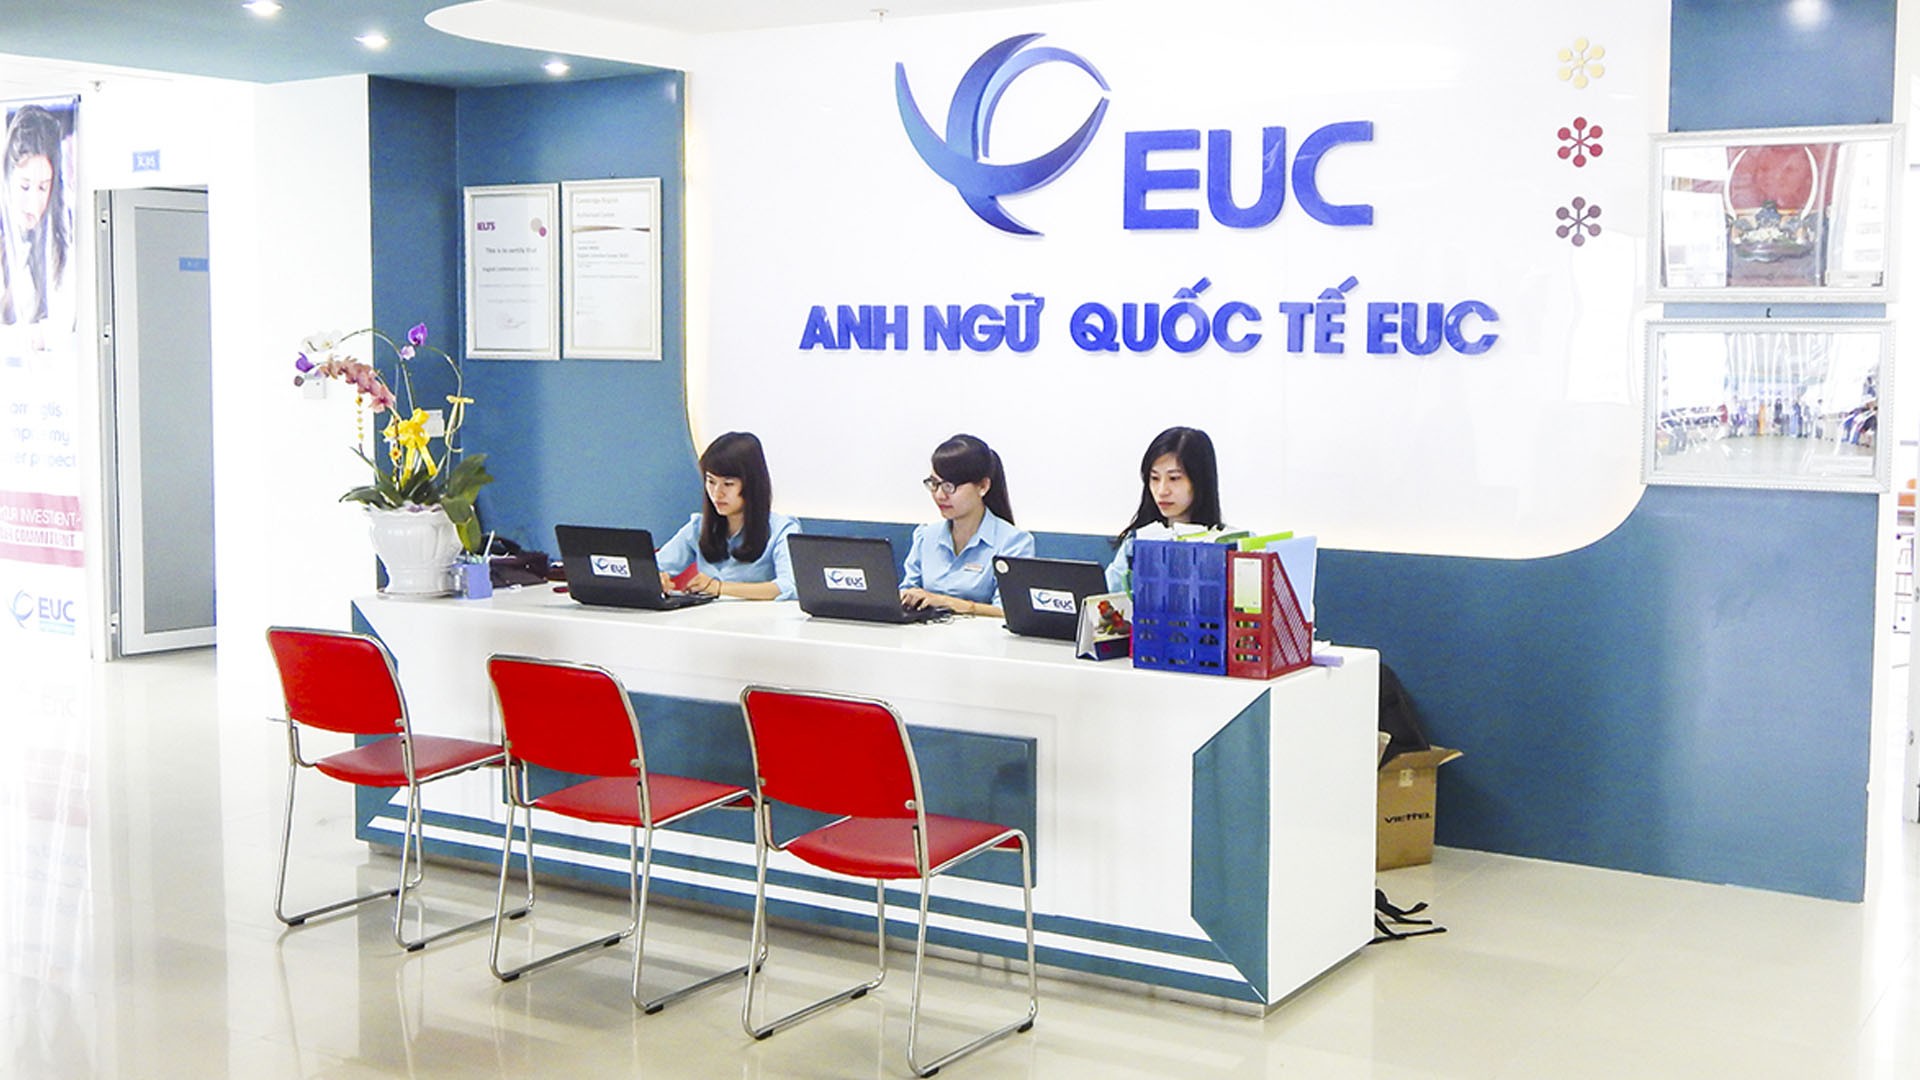 Mức học phí "khủng" của Trung tâm Anh ngữ EUC có tỉ lệ thuận với chất lượng đem lại ?